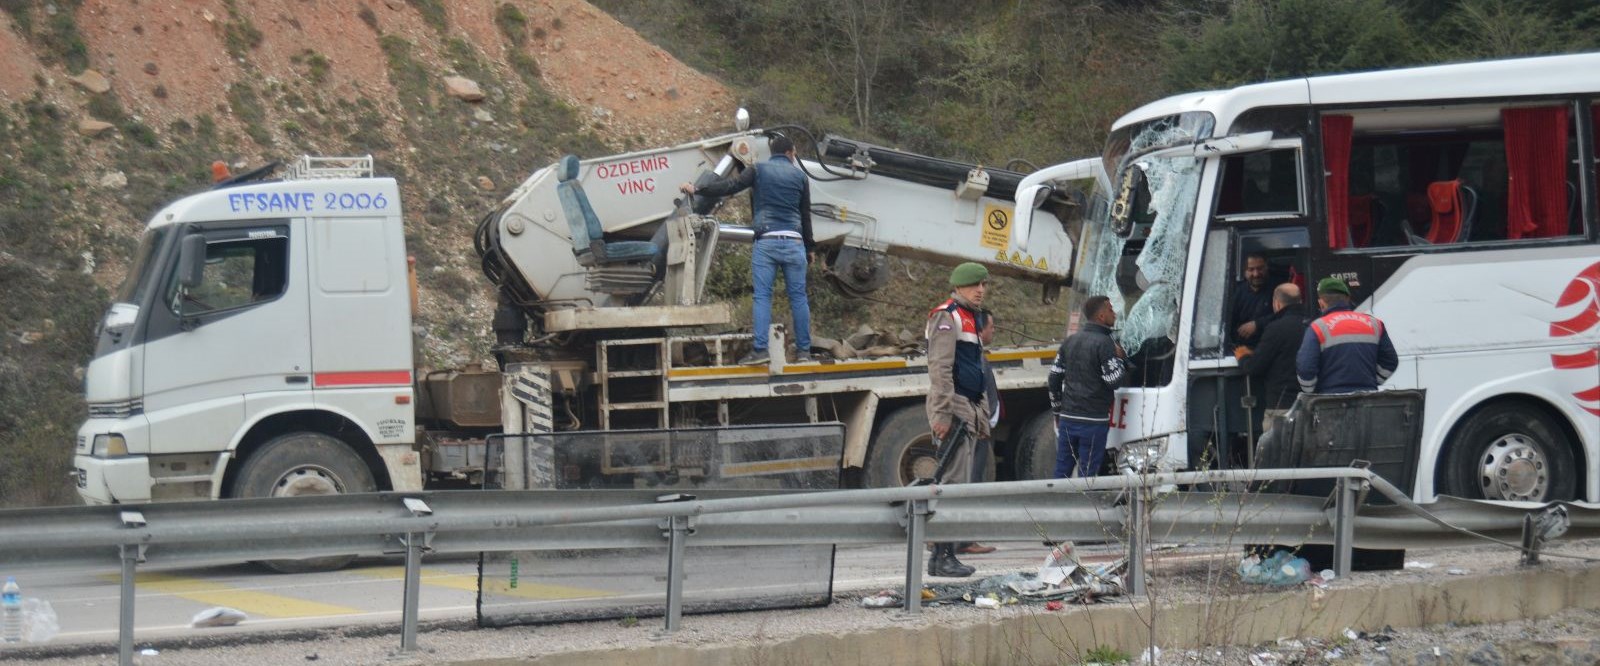 Afyonkarahisar’da yolcu otobüsü devrildi: 1 ölü, 20 yaralı